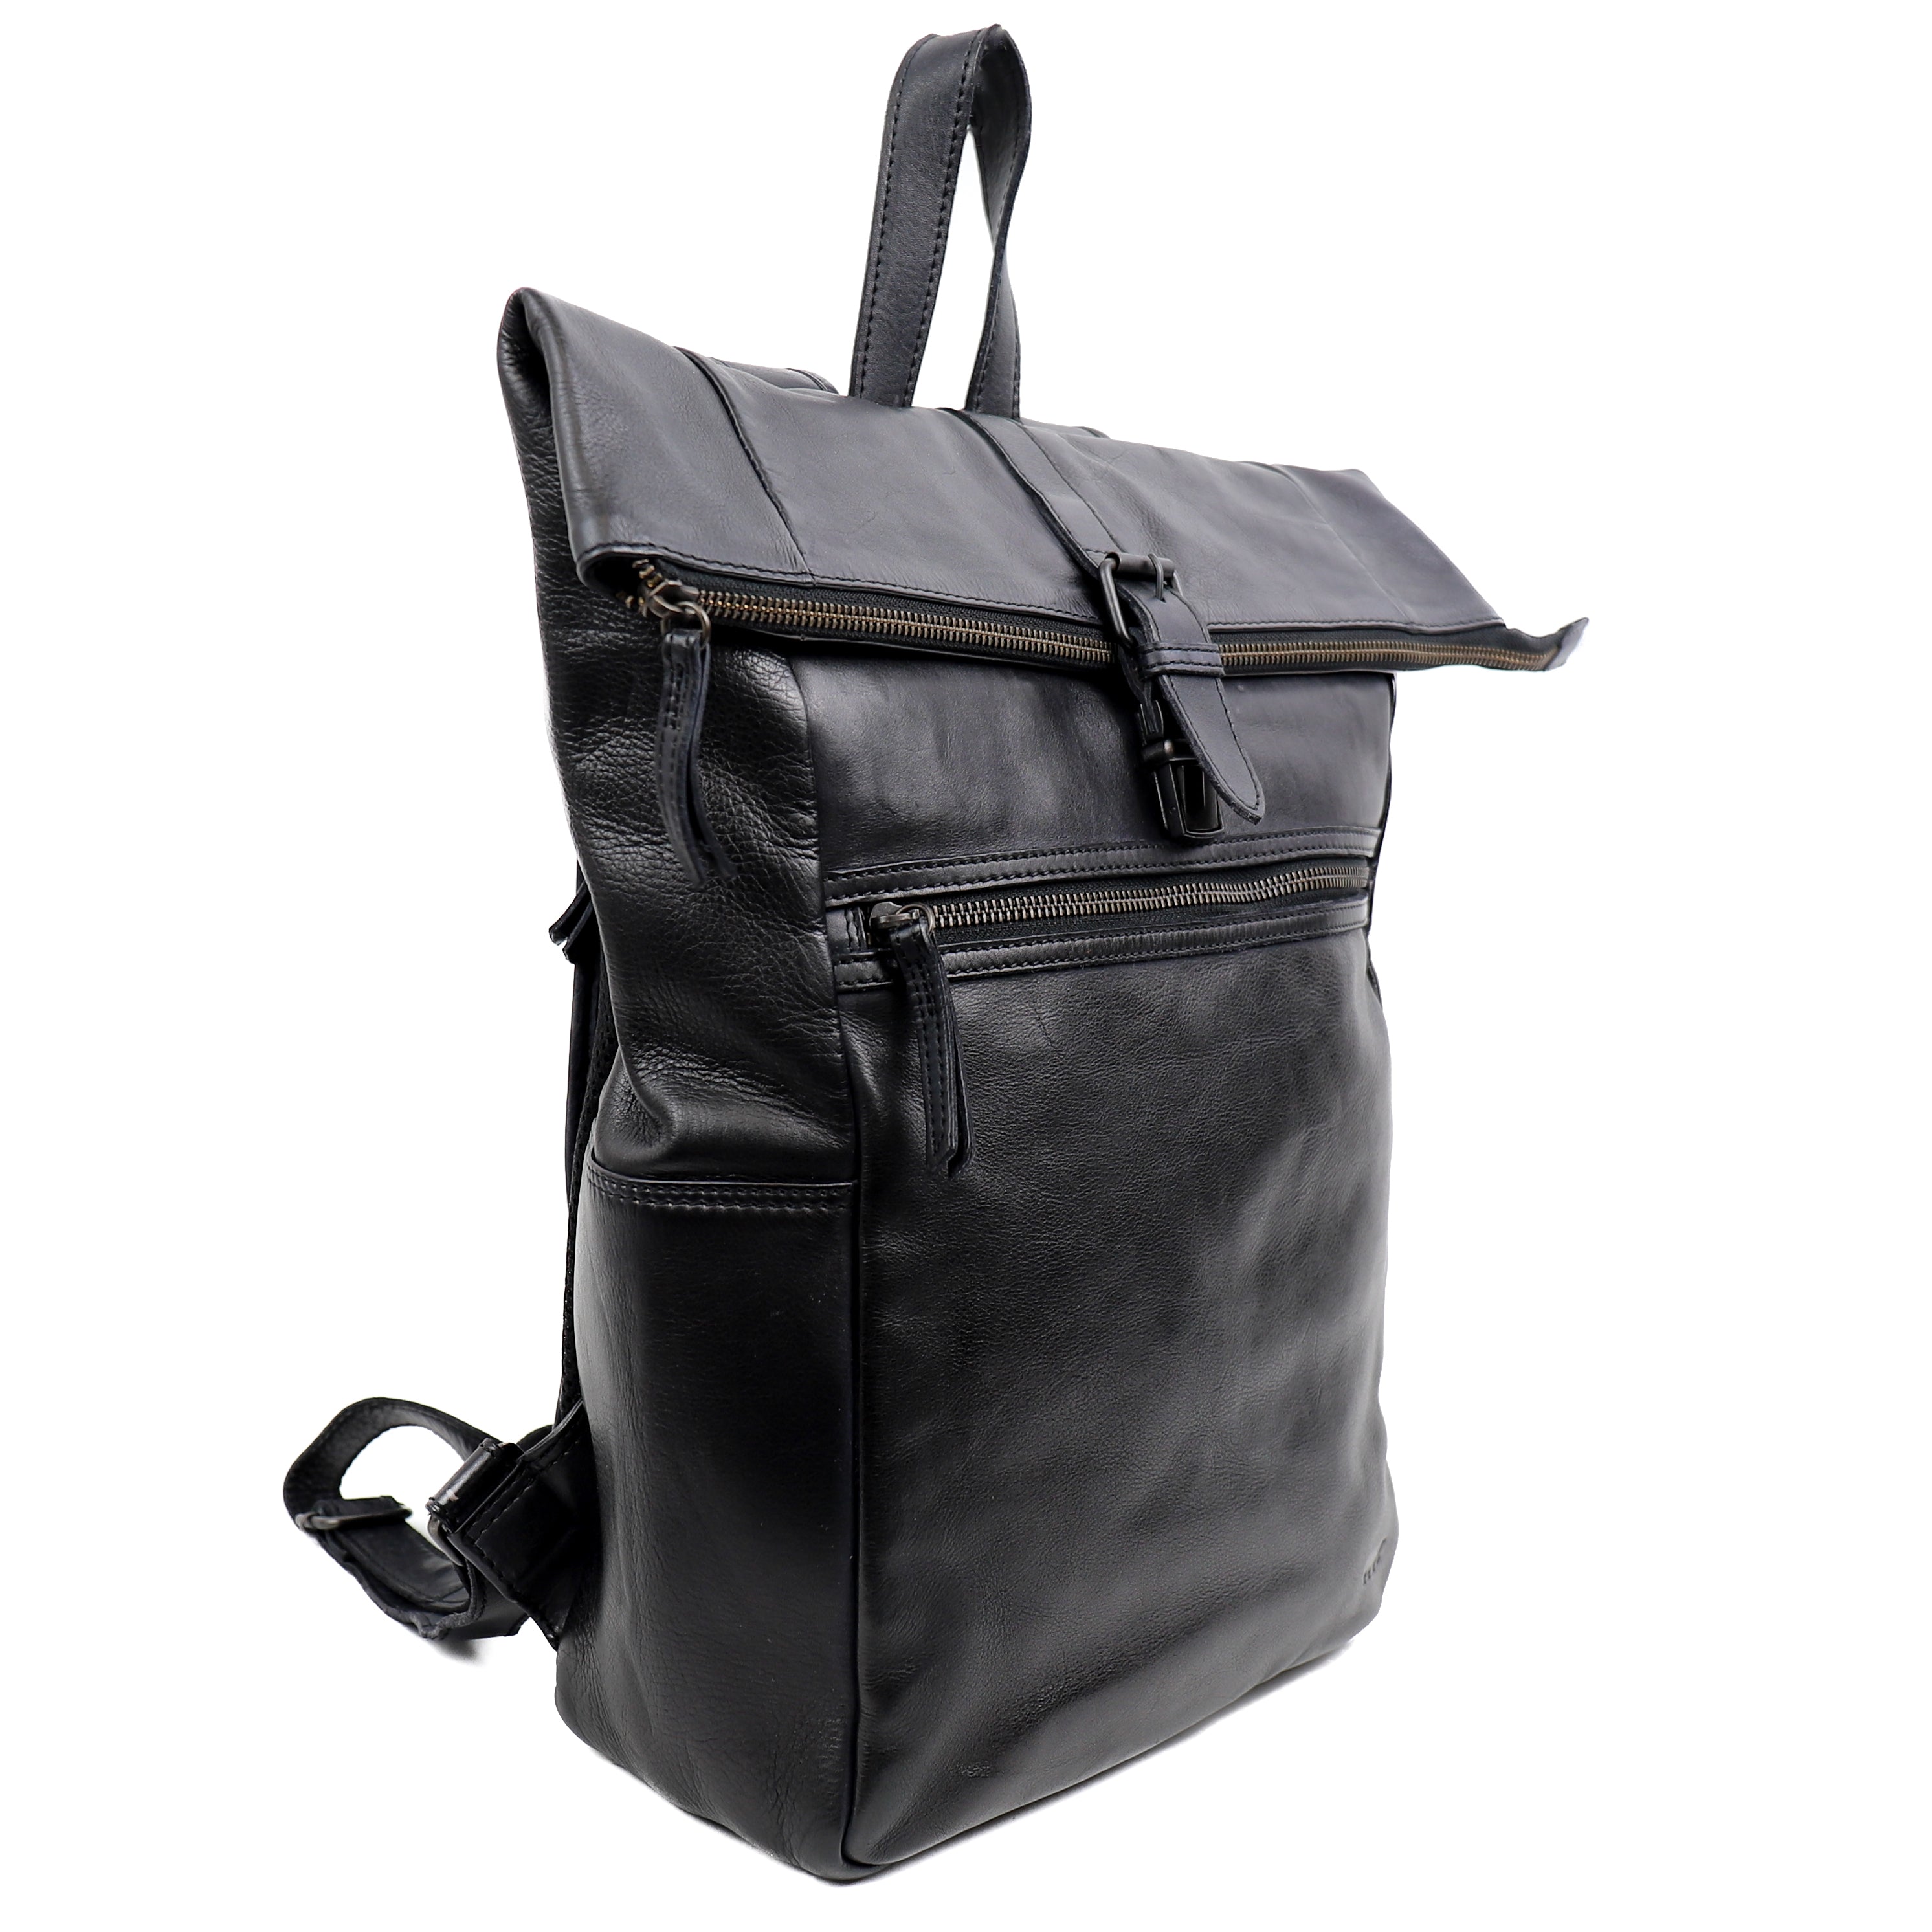 Backpack 'Rick' black - CL 40007